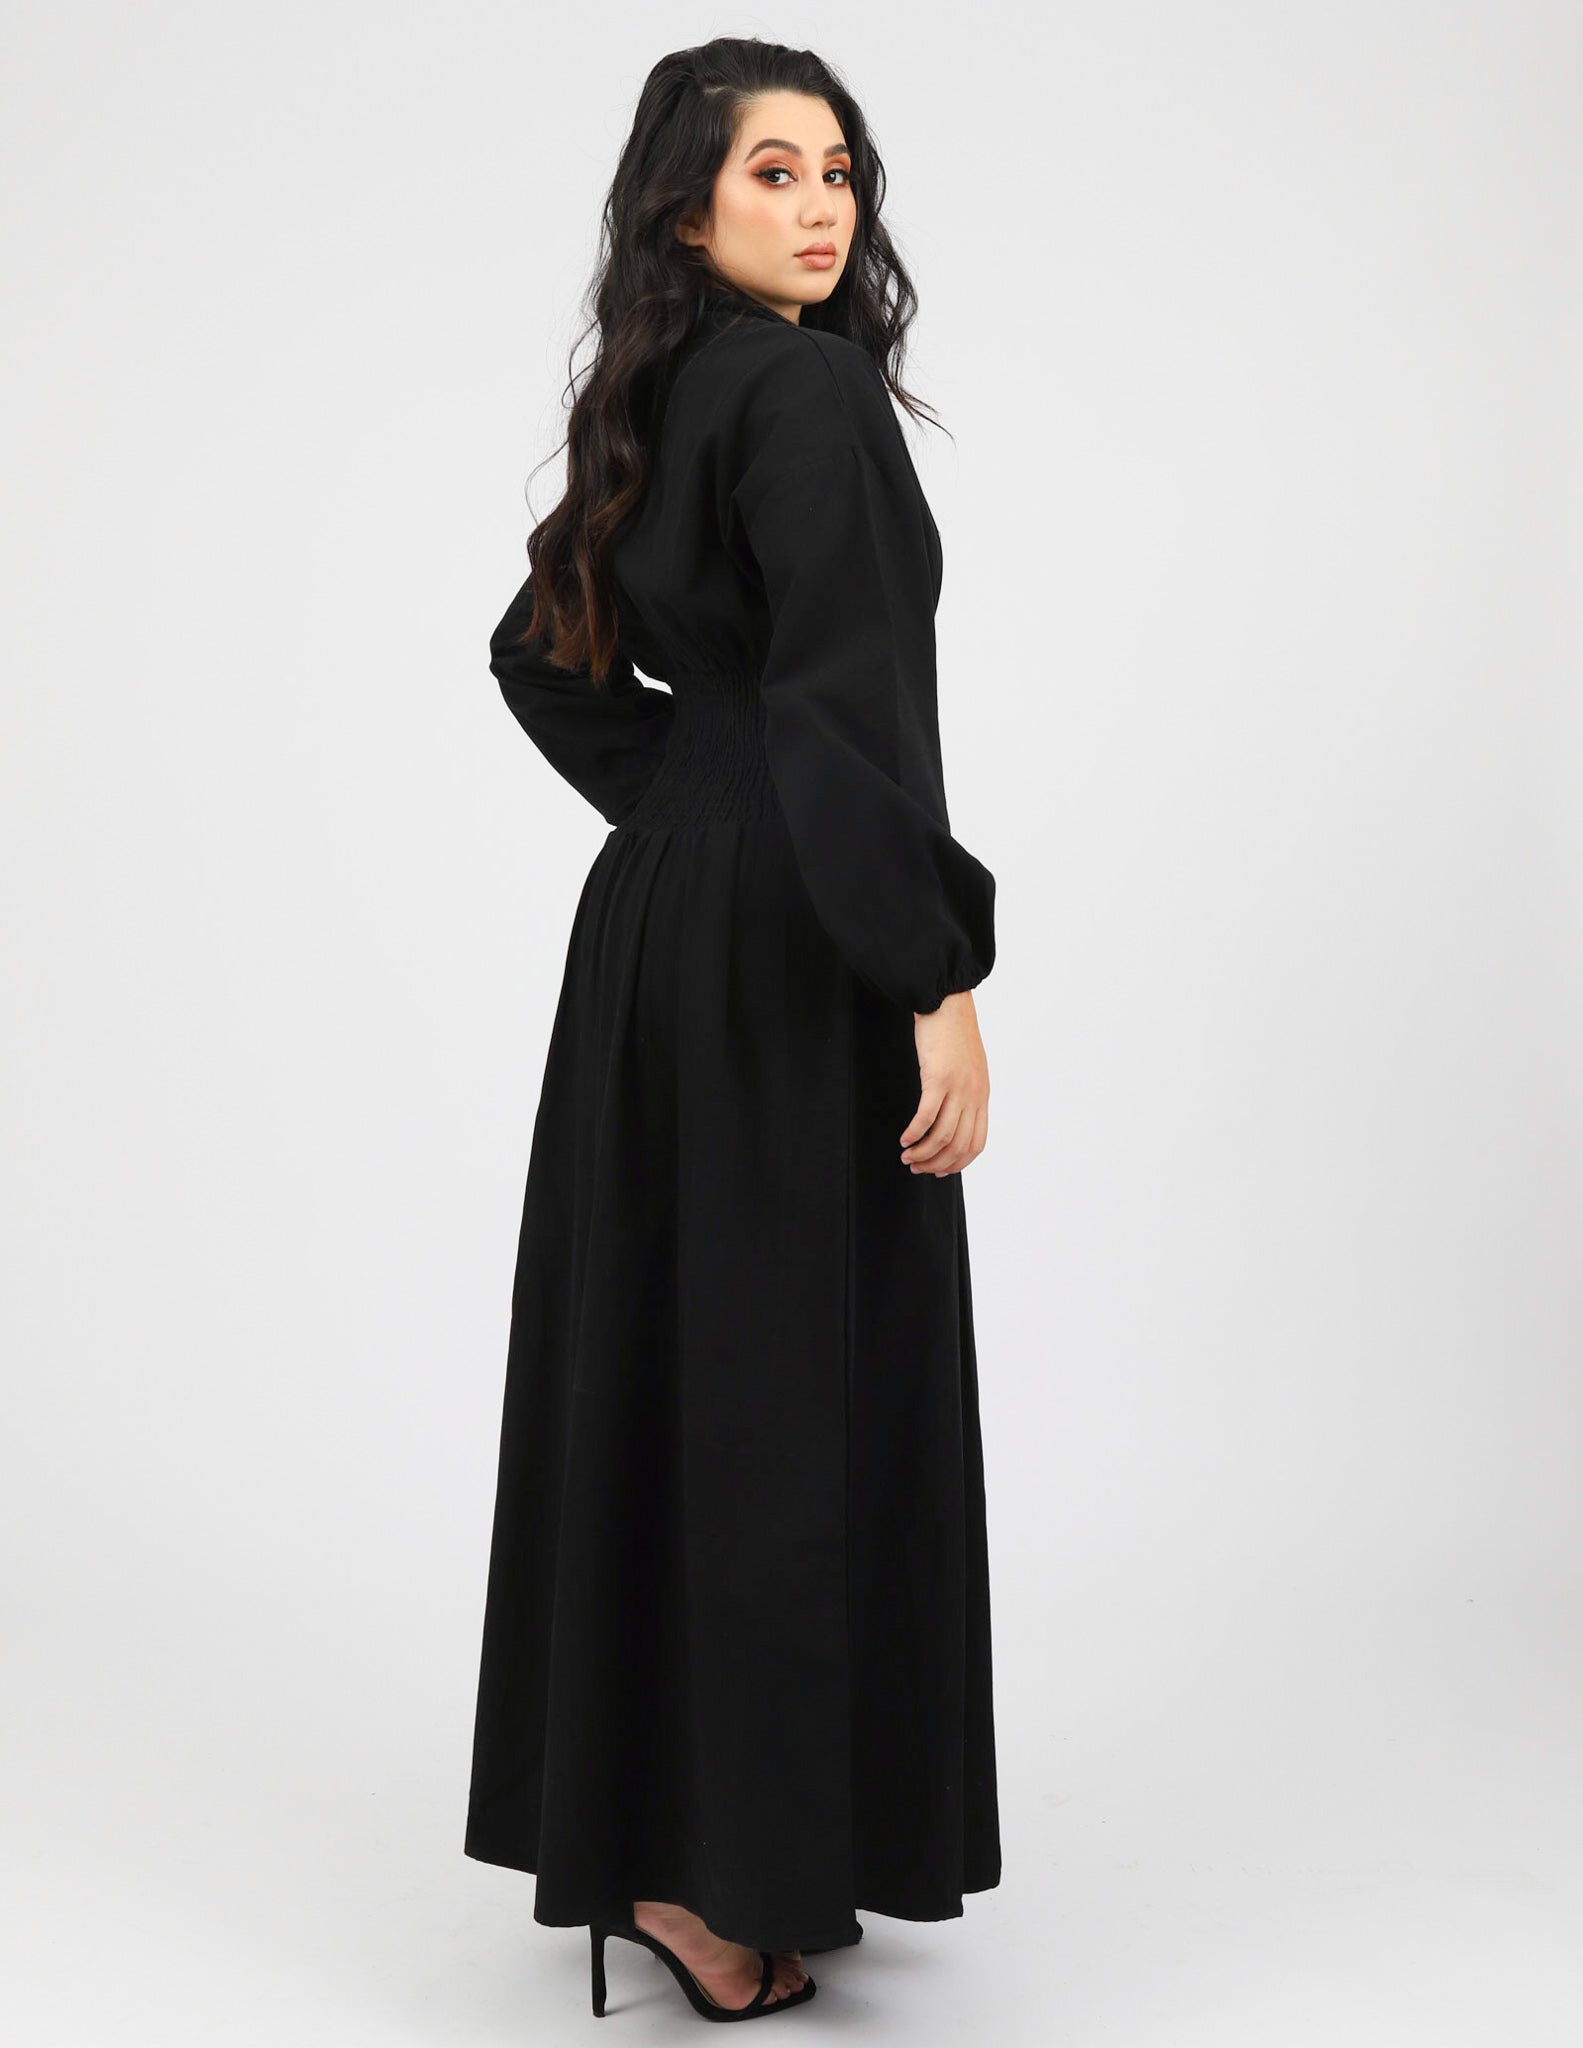 M00331Black-dress-abaya